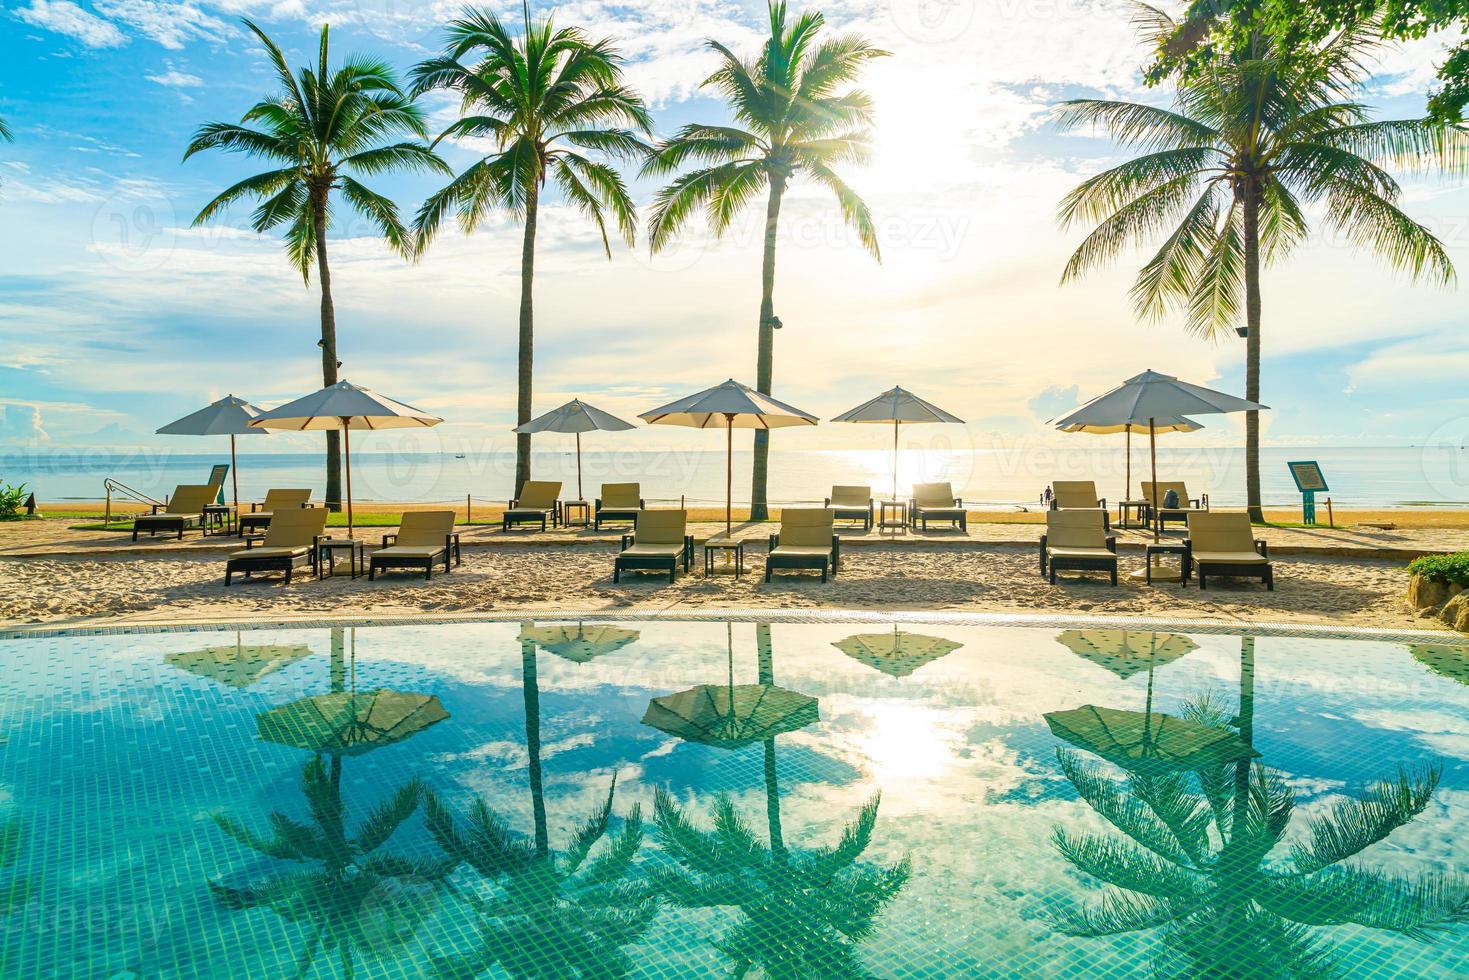 Wunderschöner Luxus-Sonnenschirm und -Stuhl um den Außenpool im Hotel und Resort mit Kokospalme bei Sonnenuntergang oder Sonnenaufgang foto